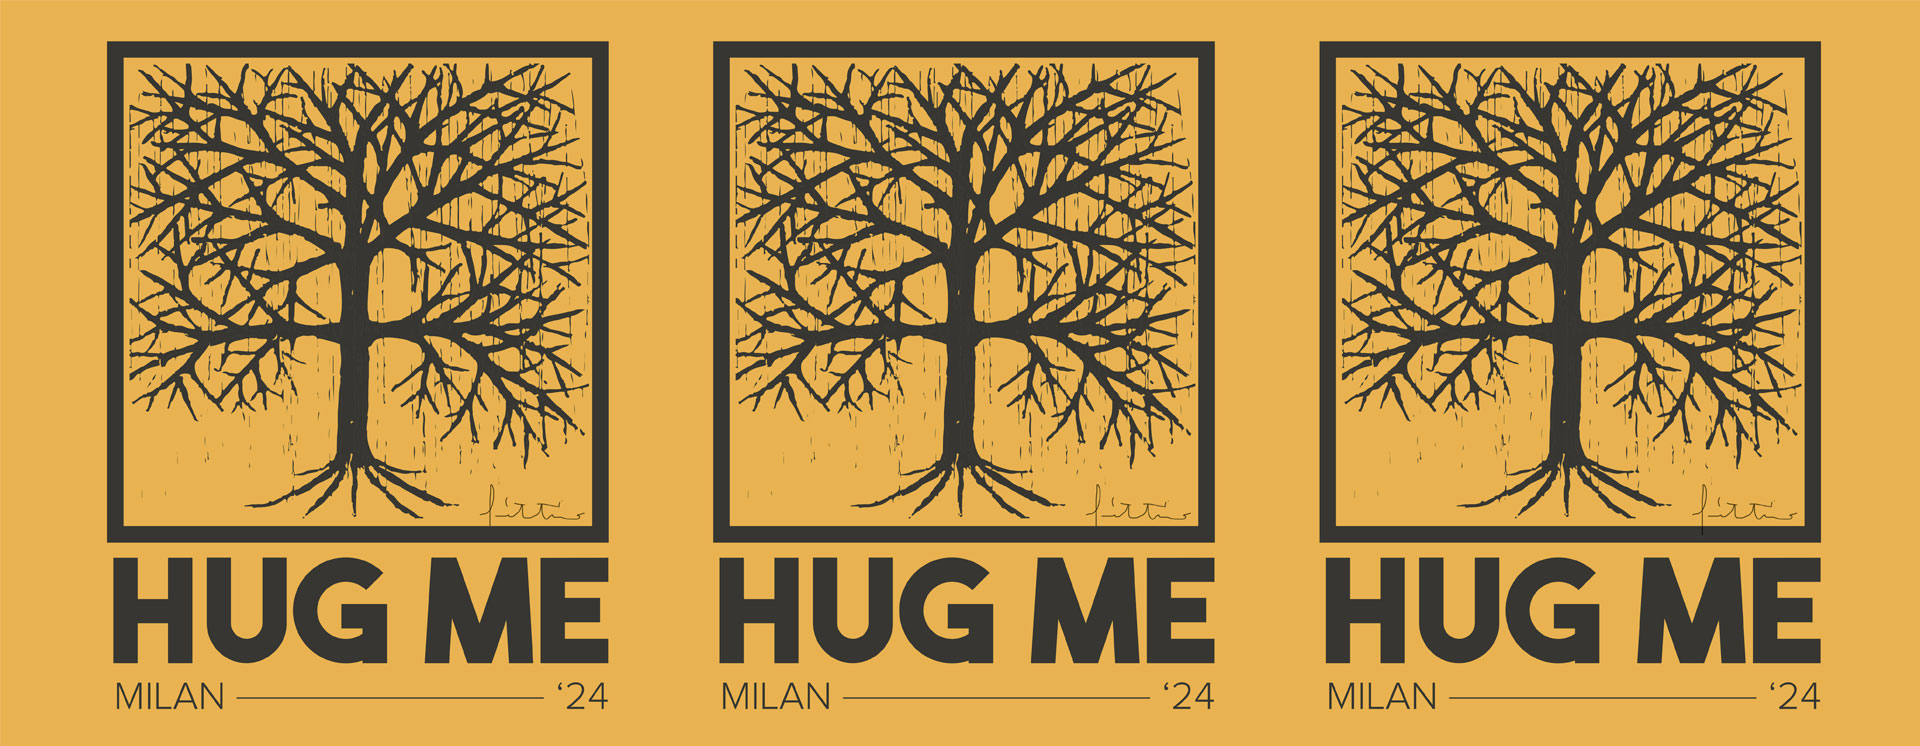 HUG ME Milan '24